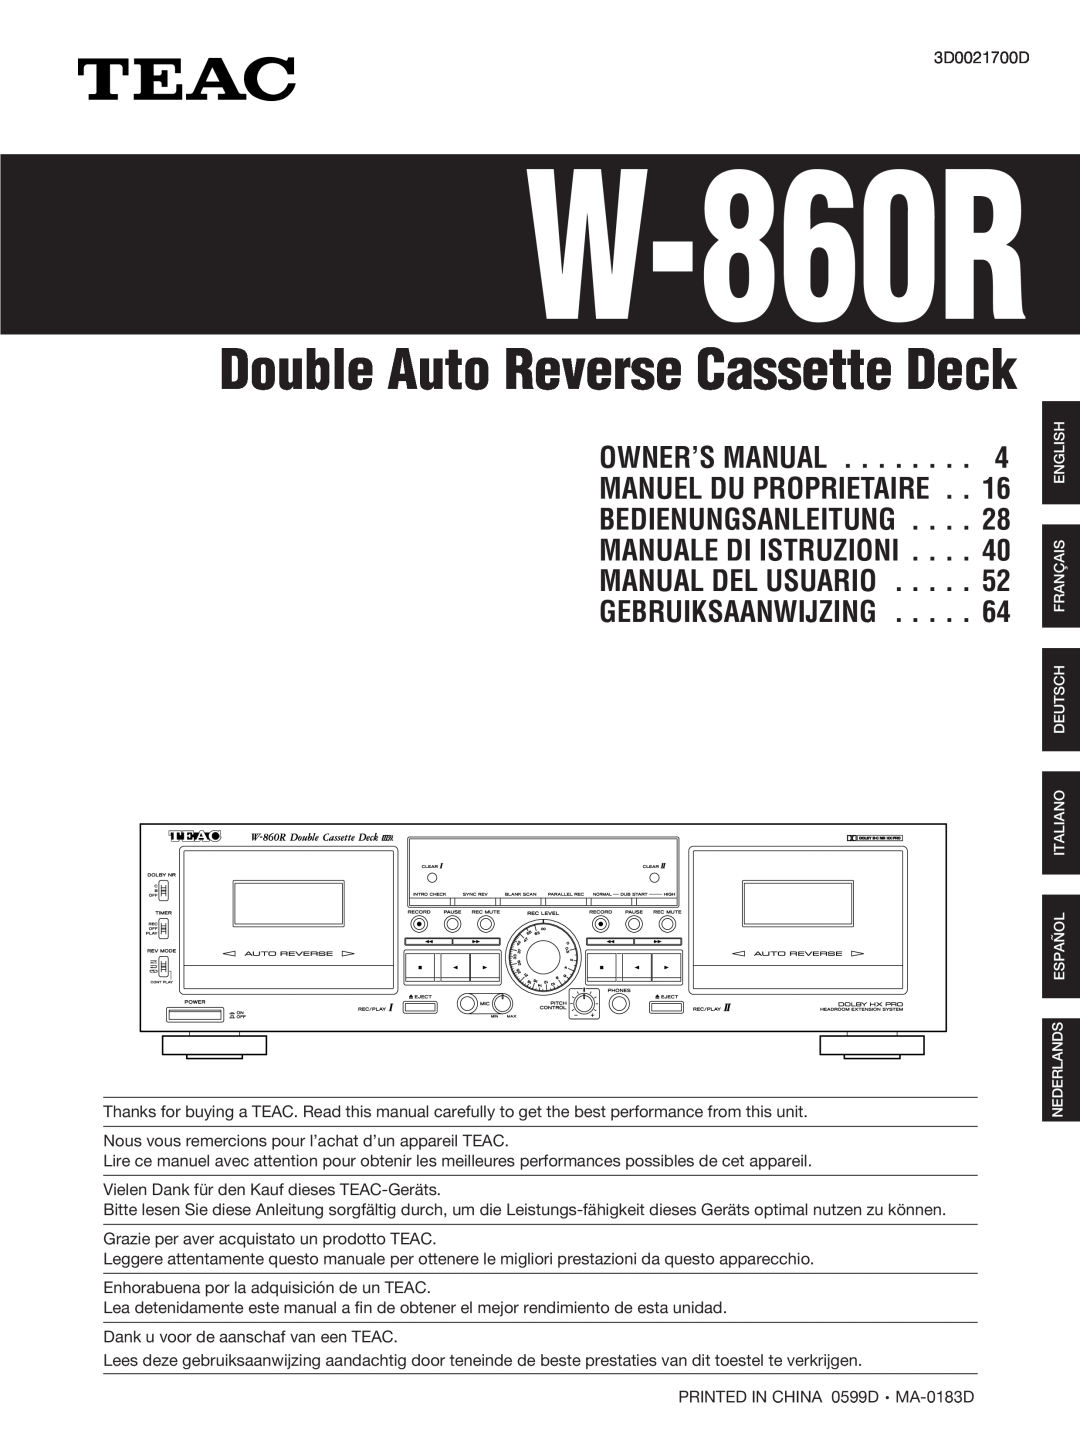 Teac W-860R owner manual Owner’S Manual, Bedienungsanleitung, Manuale Di Istruzioni, Manual Del Usuario 